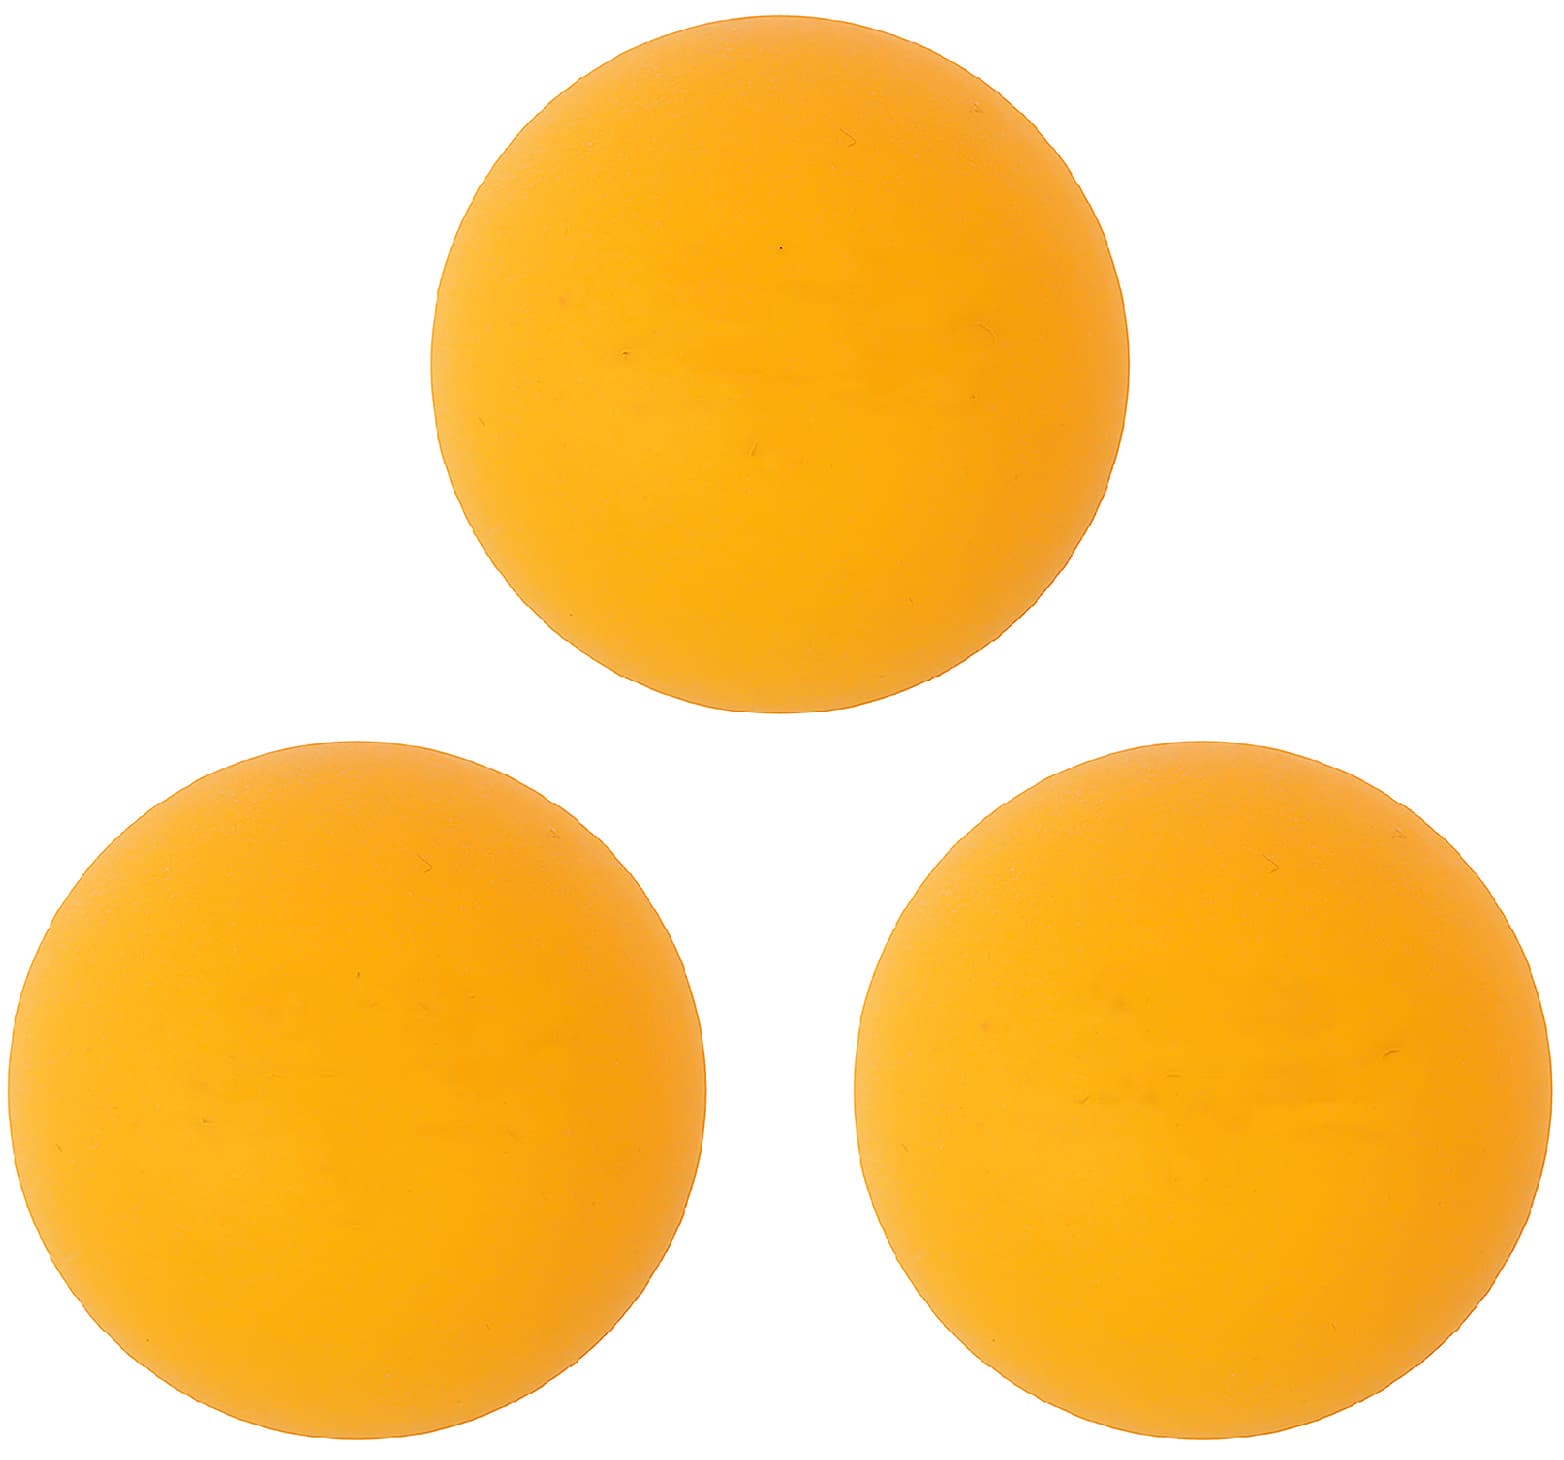 Мячи для настольного тенниса (Пинг-Понга) King Becket C34463, 40 мм., 3 звезды / 6 шт.